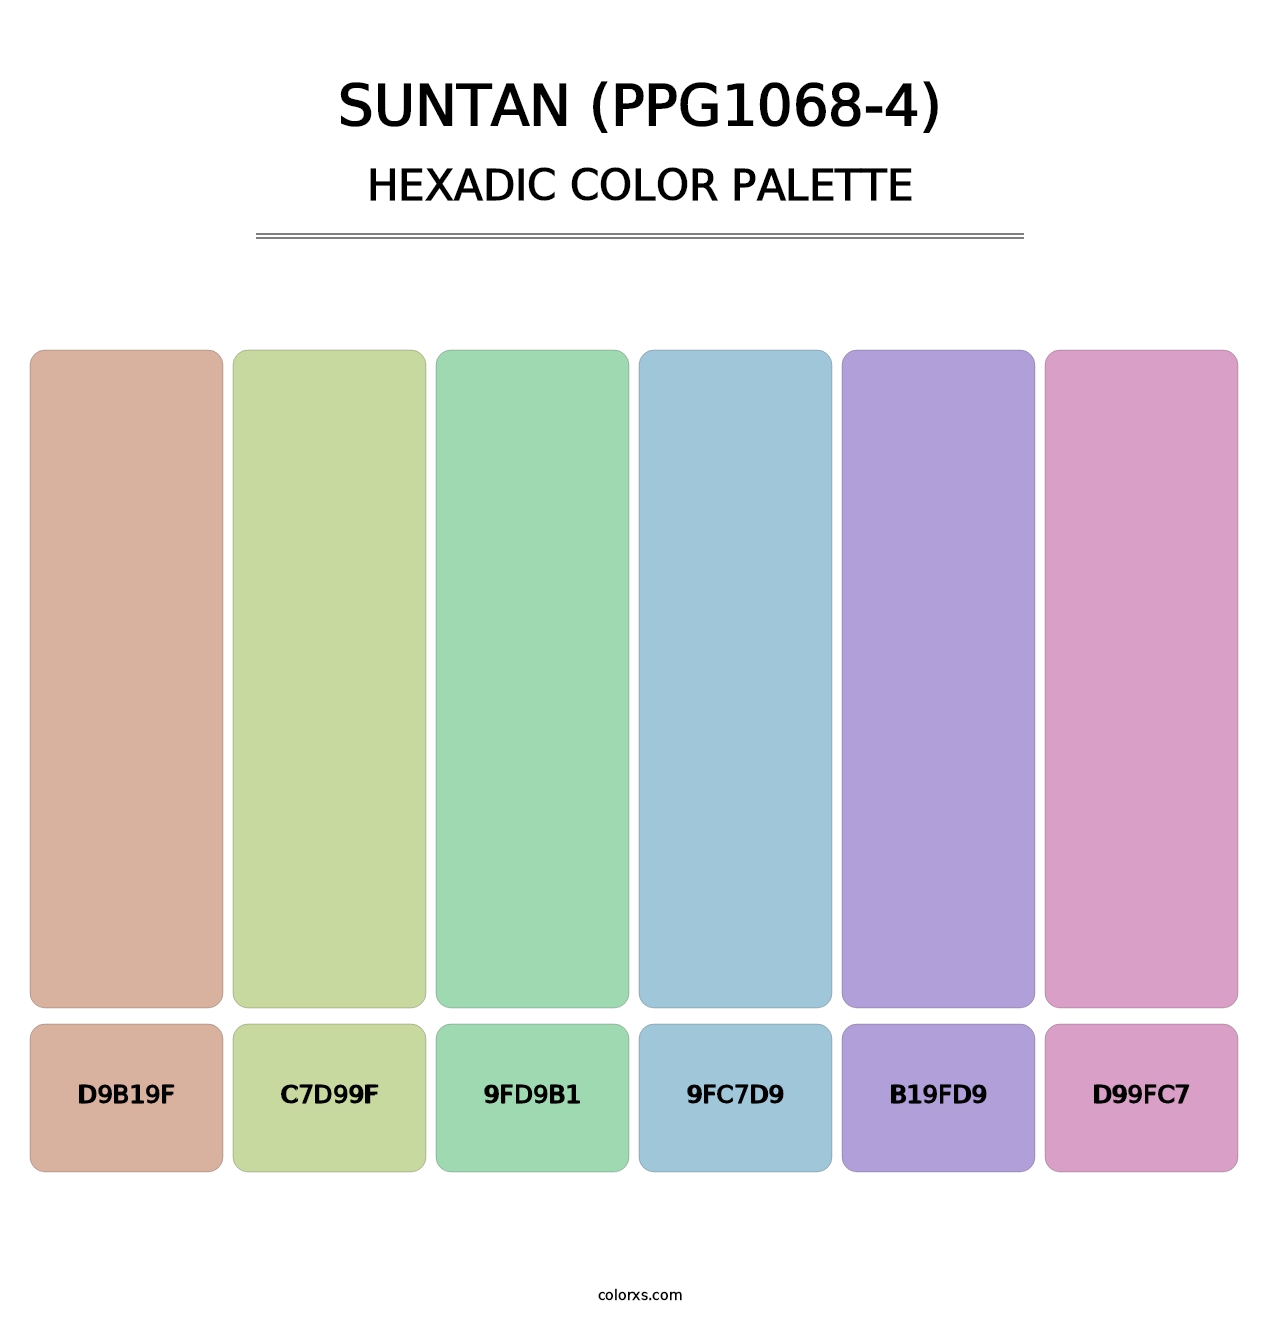 Suntan (PPG1068-4) - Hexadic Color Palette